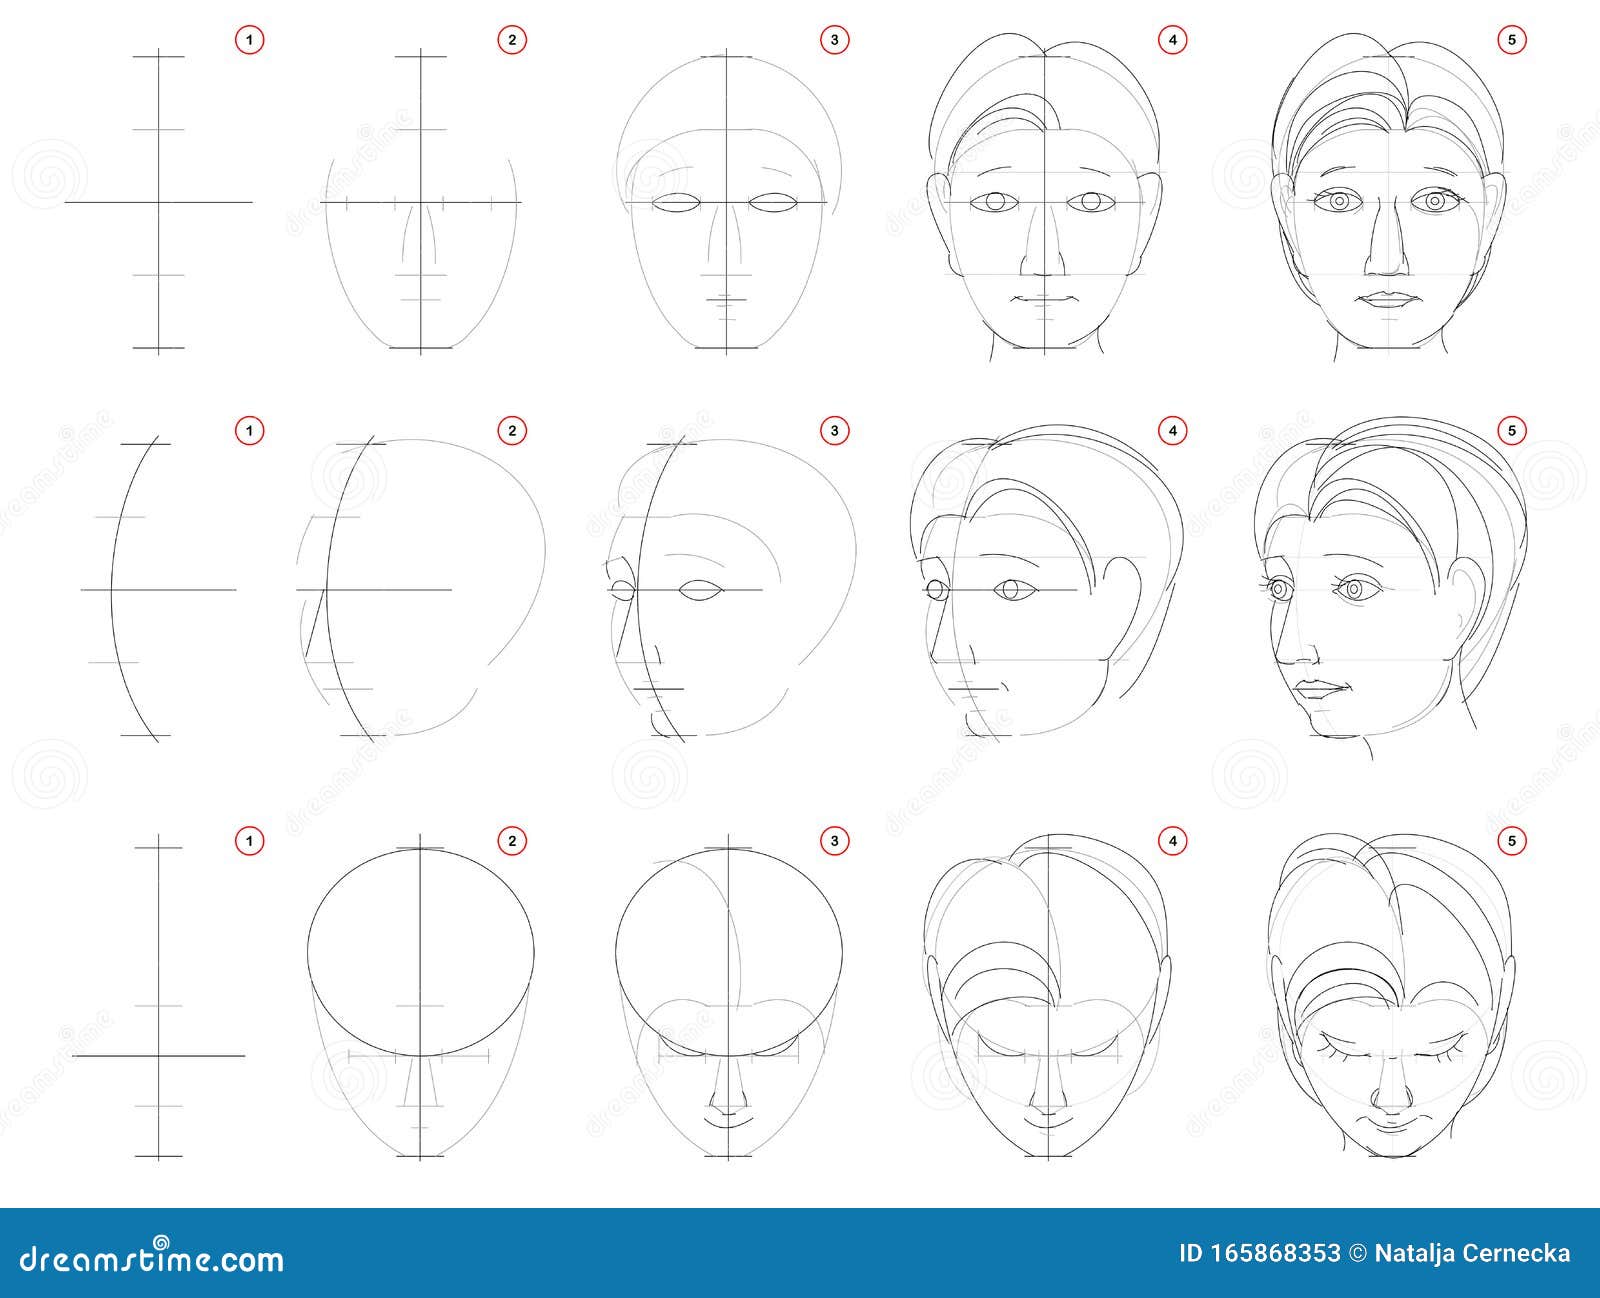 120785 Sketch Human Head Images Stock Photos  Vectors  Shutterstock